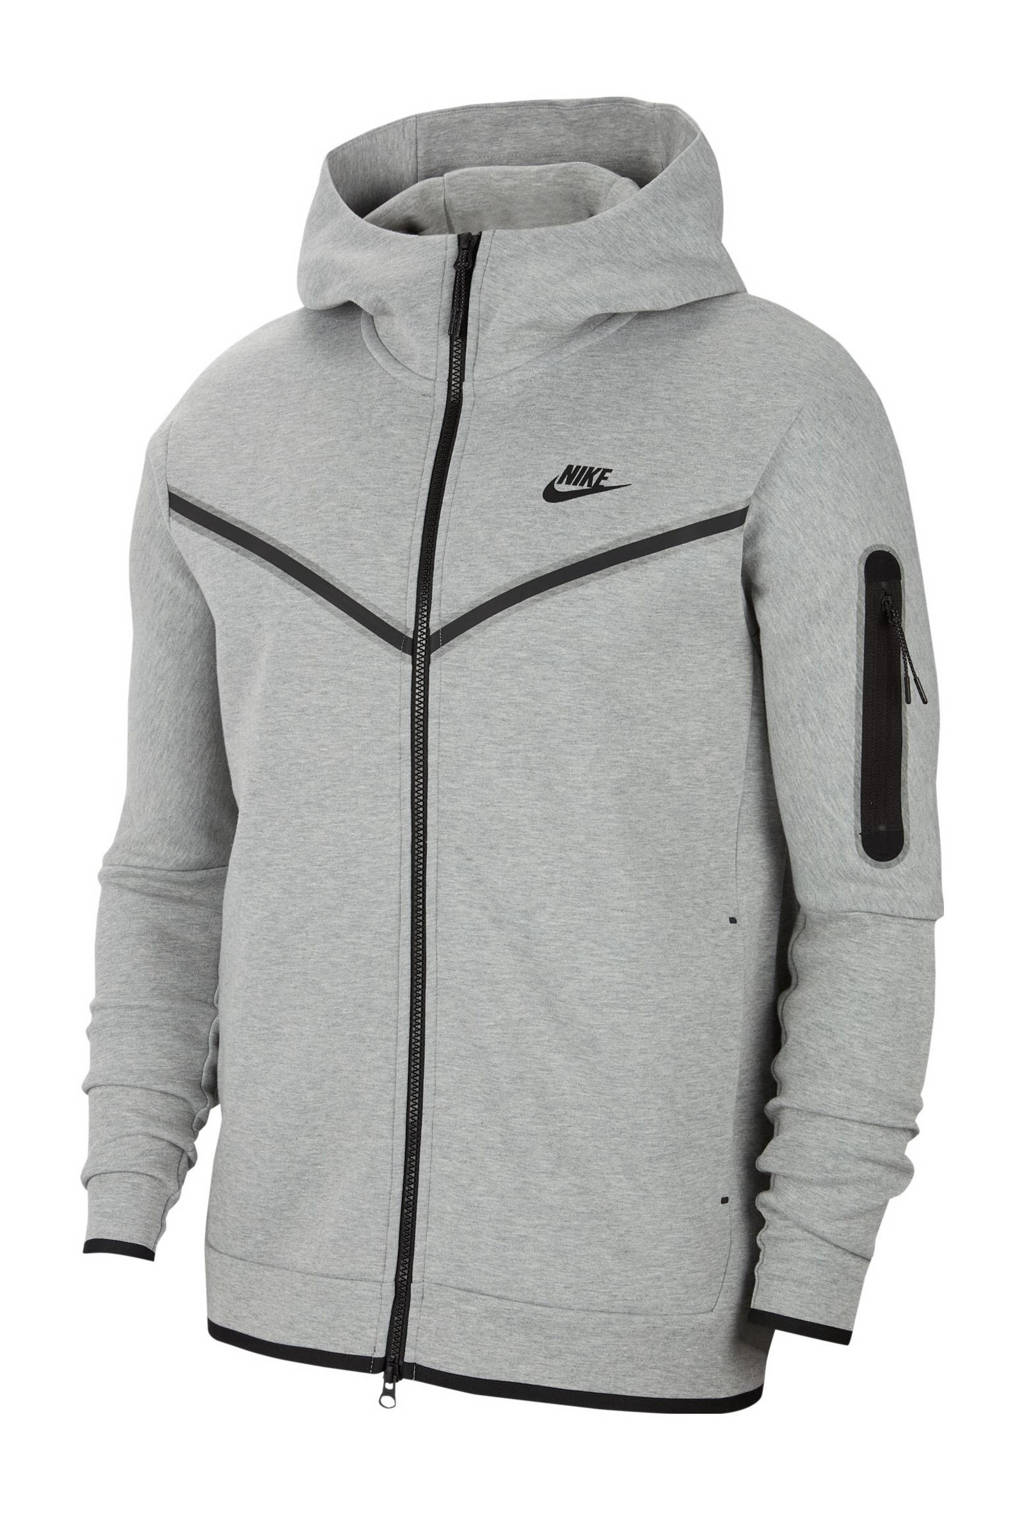 Overeenkomstig met Melodieus Gemiddeld Nike sweatvest grijs/zwart | wehkamp